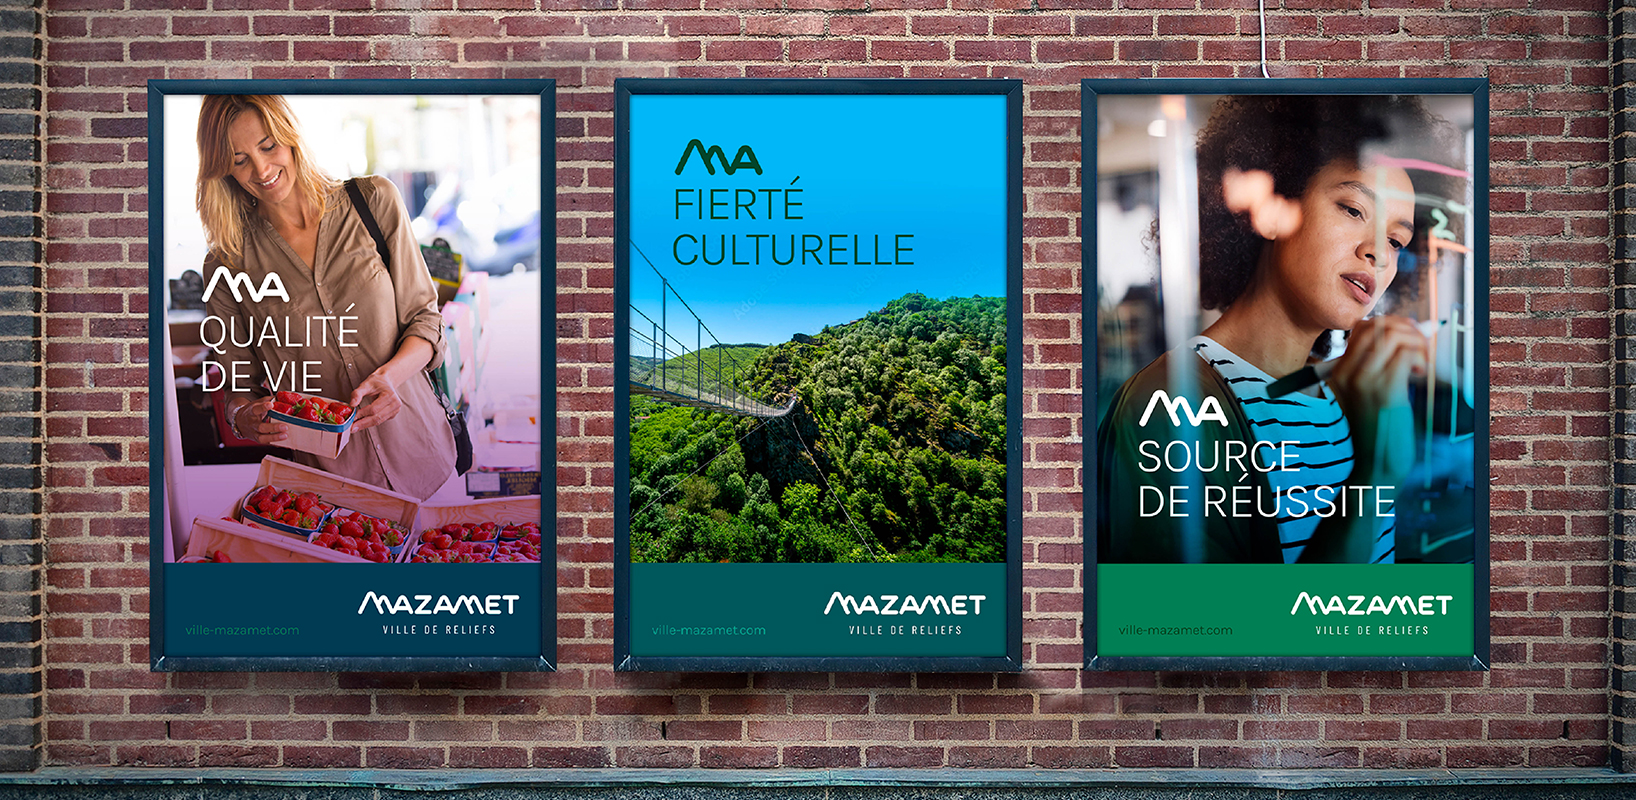 Création d'un concept de communication appliqué à des affiches pour la Ville de Mazamet